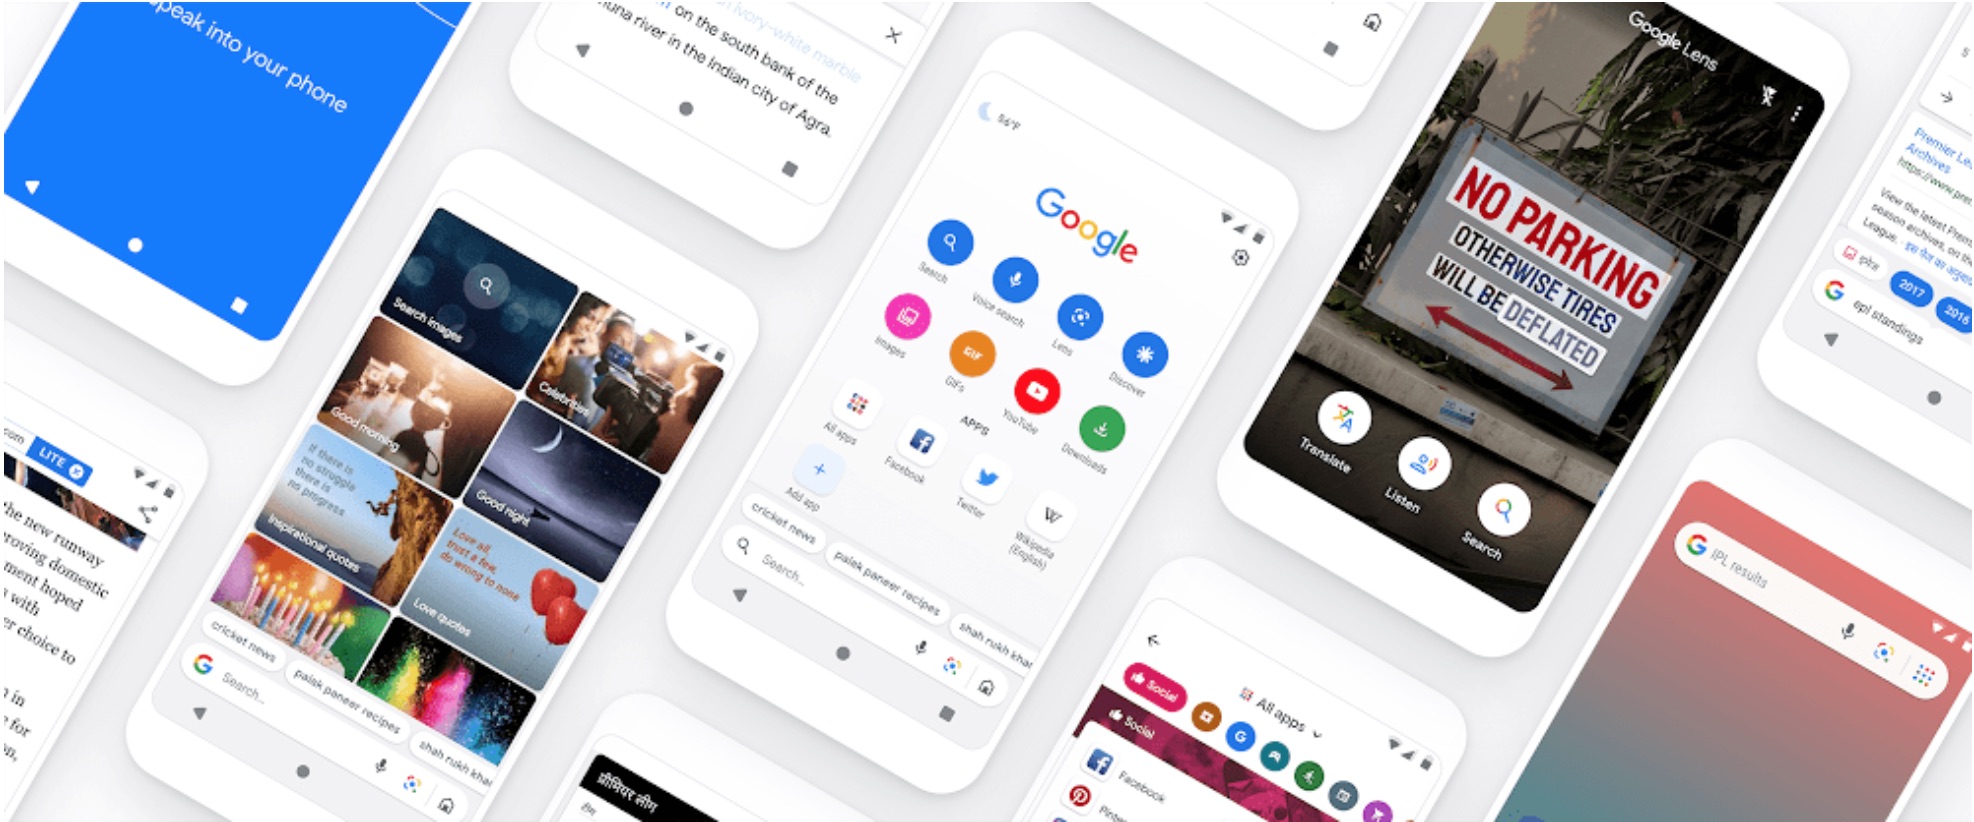 Google Go теперь доступен для «обычных» устройств Android